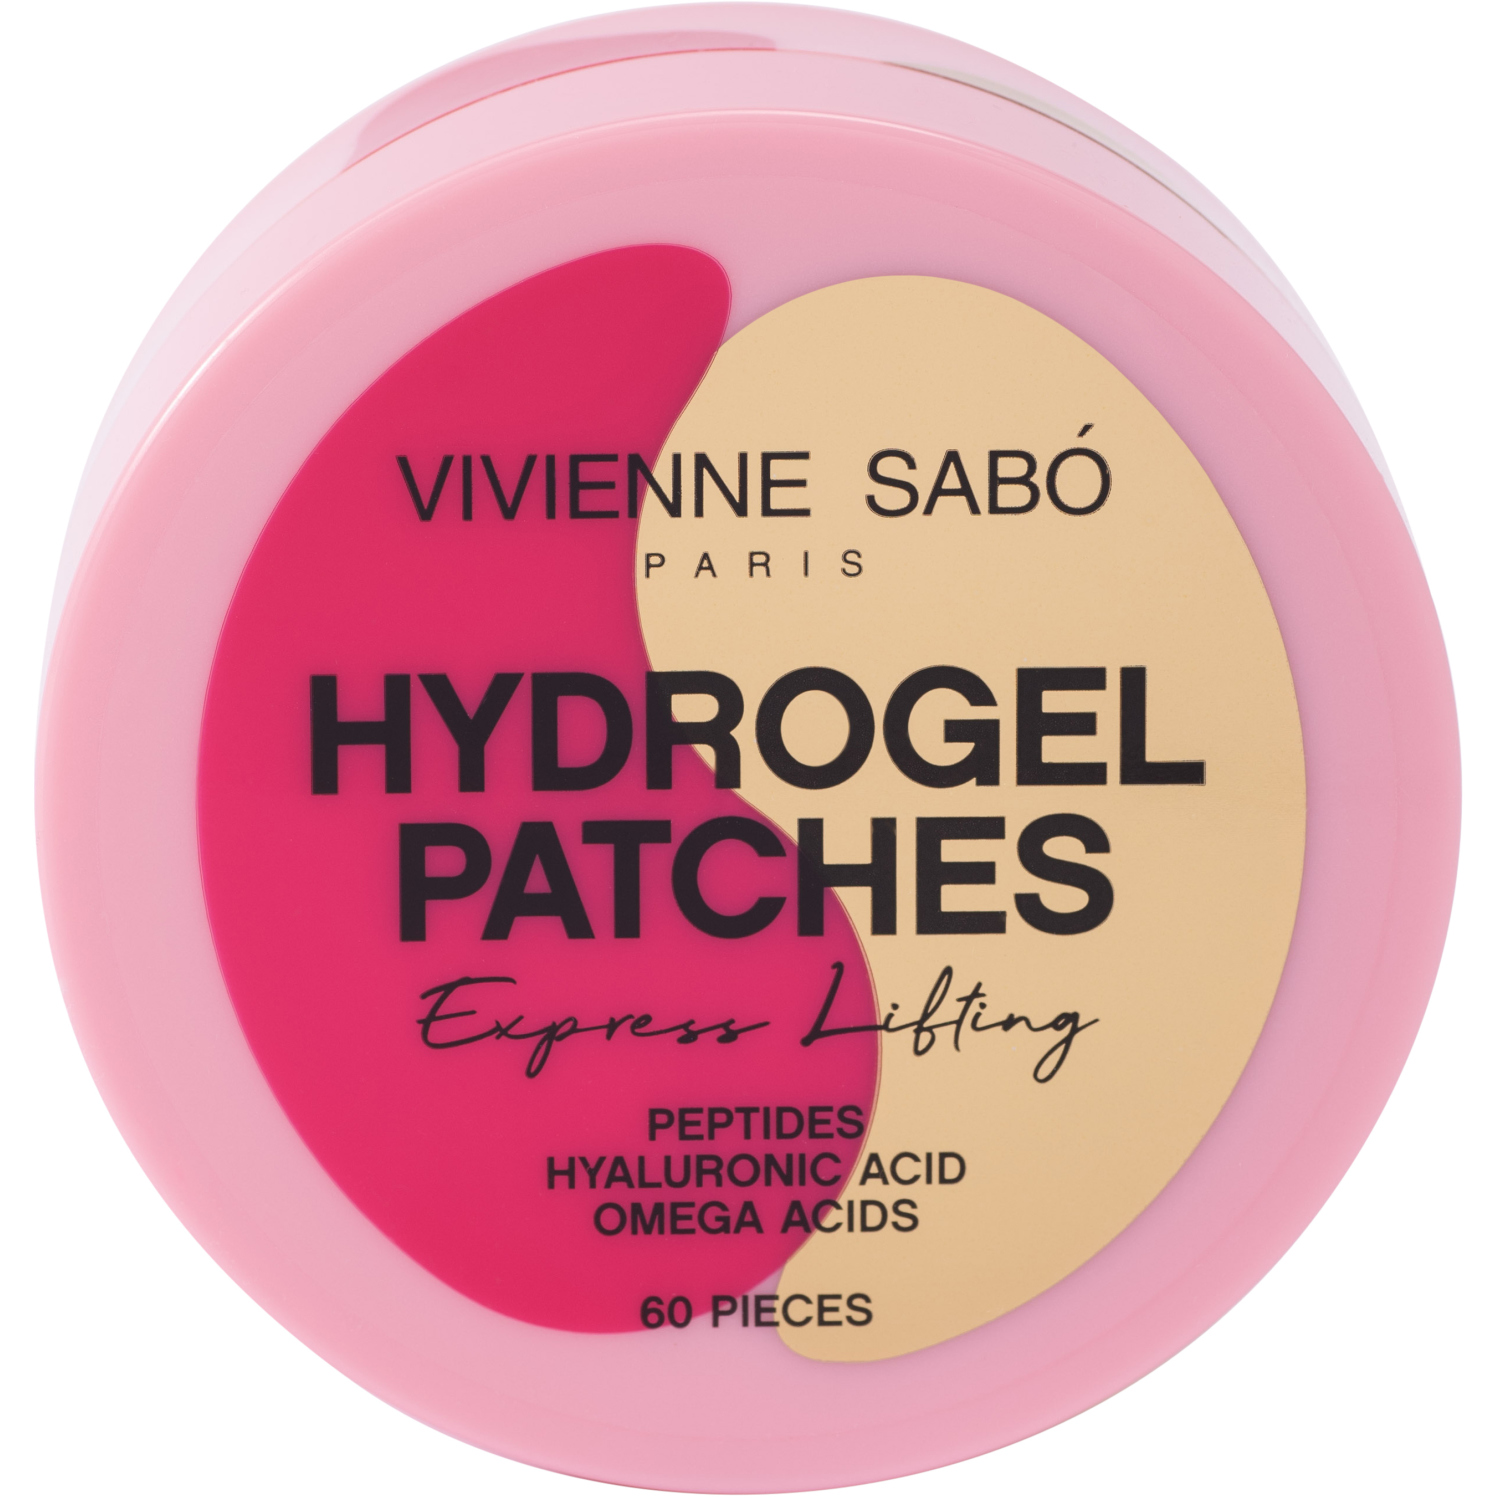 Гидрогелевые патчи для глаз Vivienne Sabo HYDROGEL PATCHES, снимают отечность и избавляют от темных кругов под глазами, прозрачные, розовые, 60 штук гидрогелевые патчи для глаз beauugreen collagen